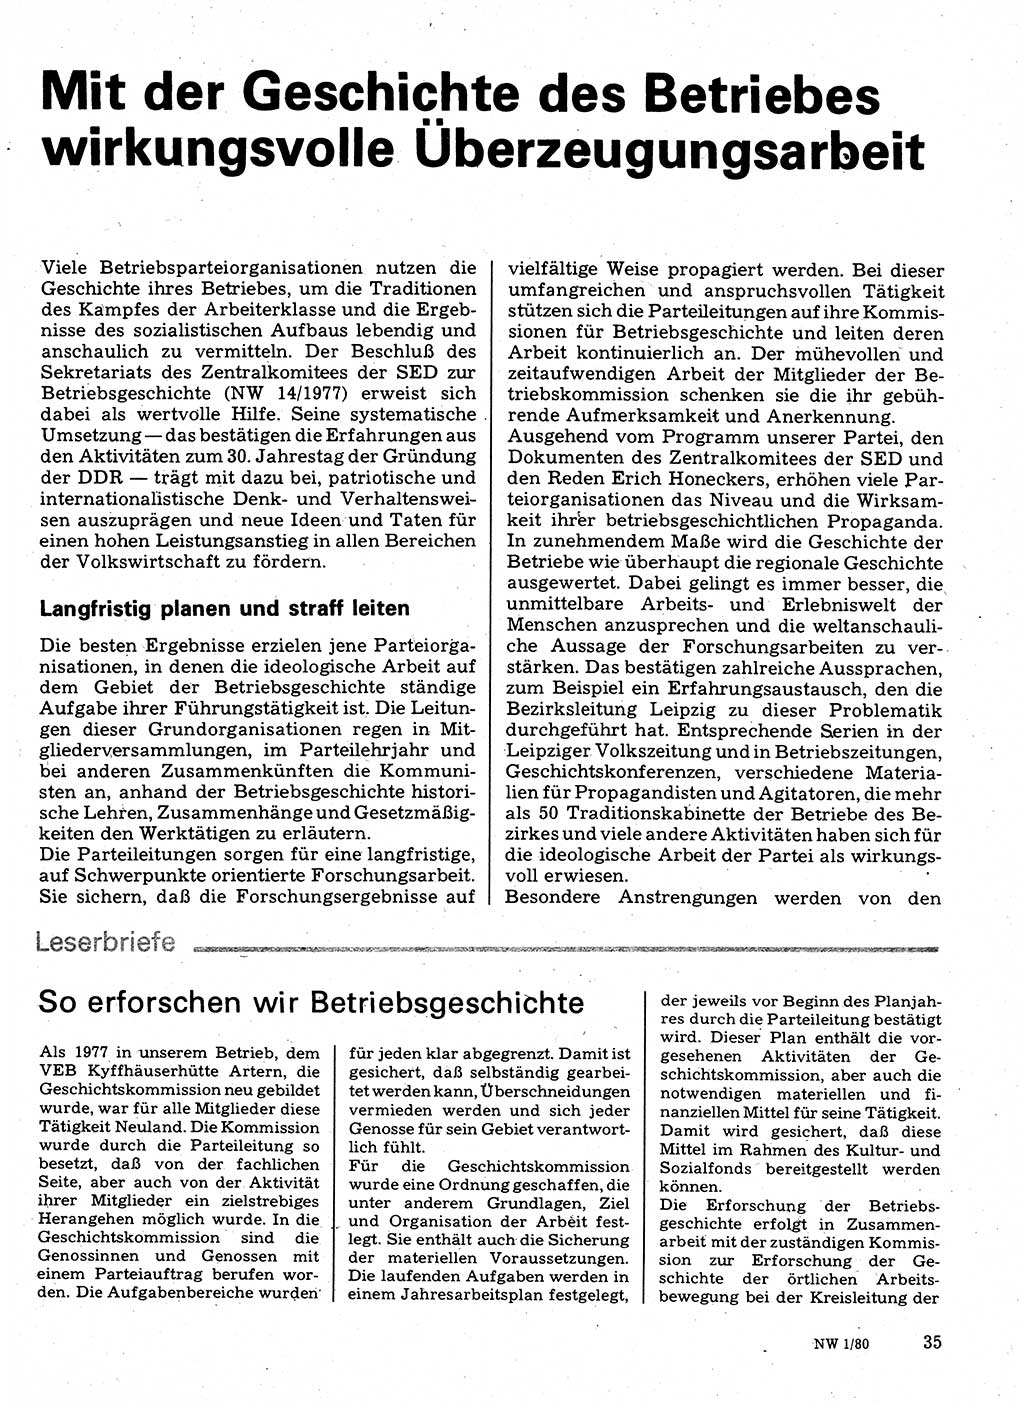 Neuer Weg (NW), Organ des Zentralkomitees (ZK) der SED (Sozialistische Einheitspartei Deutschlands) für Fragen des Parteilebens, 35. Jahrgang [Deutsche Demokratische Republik (DDR)] 1980, Seite 35 (NW ZK SED DDR 1980, S. 35)